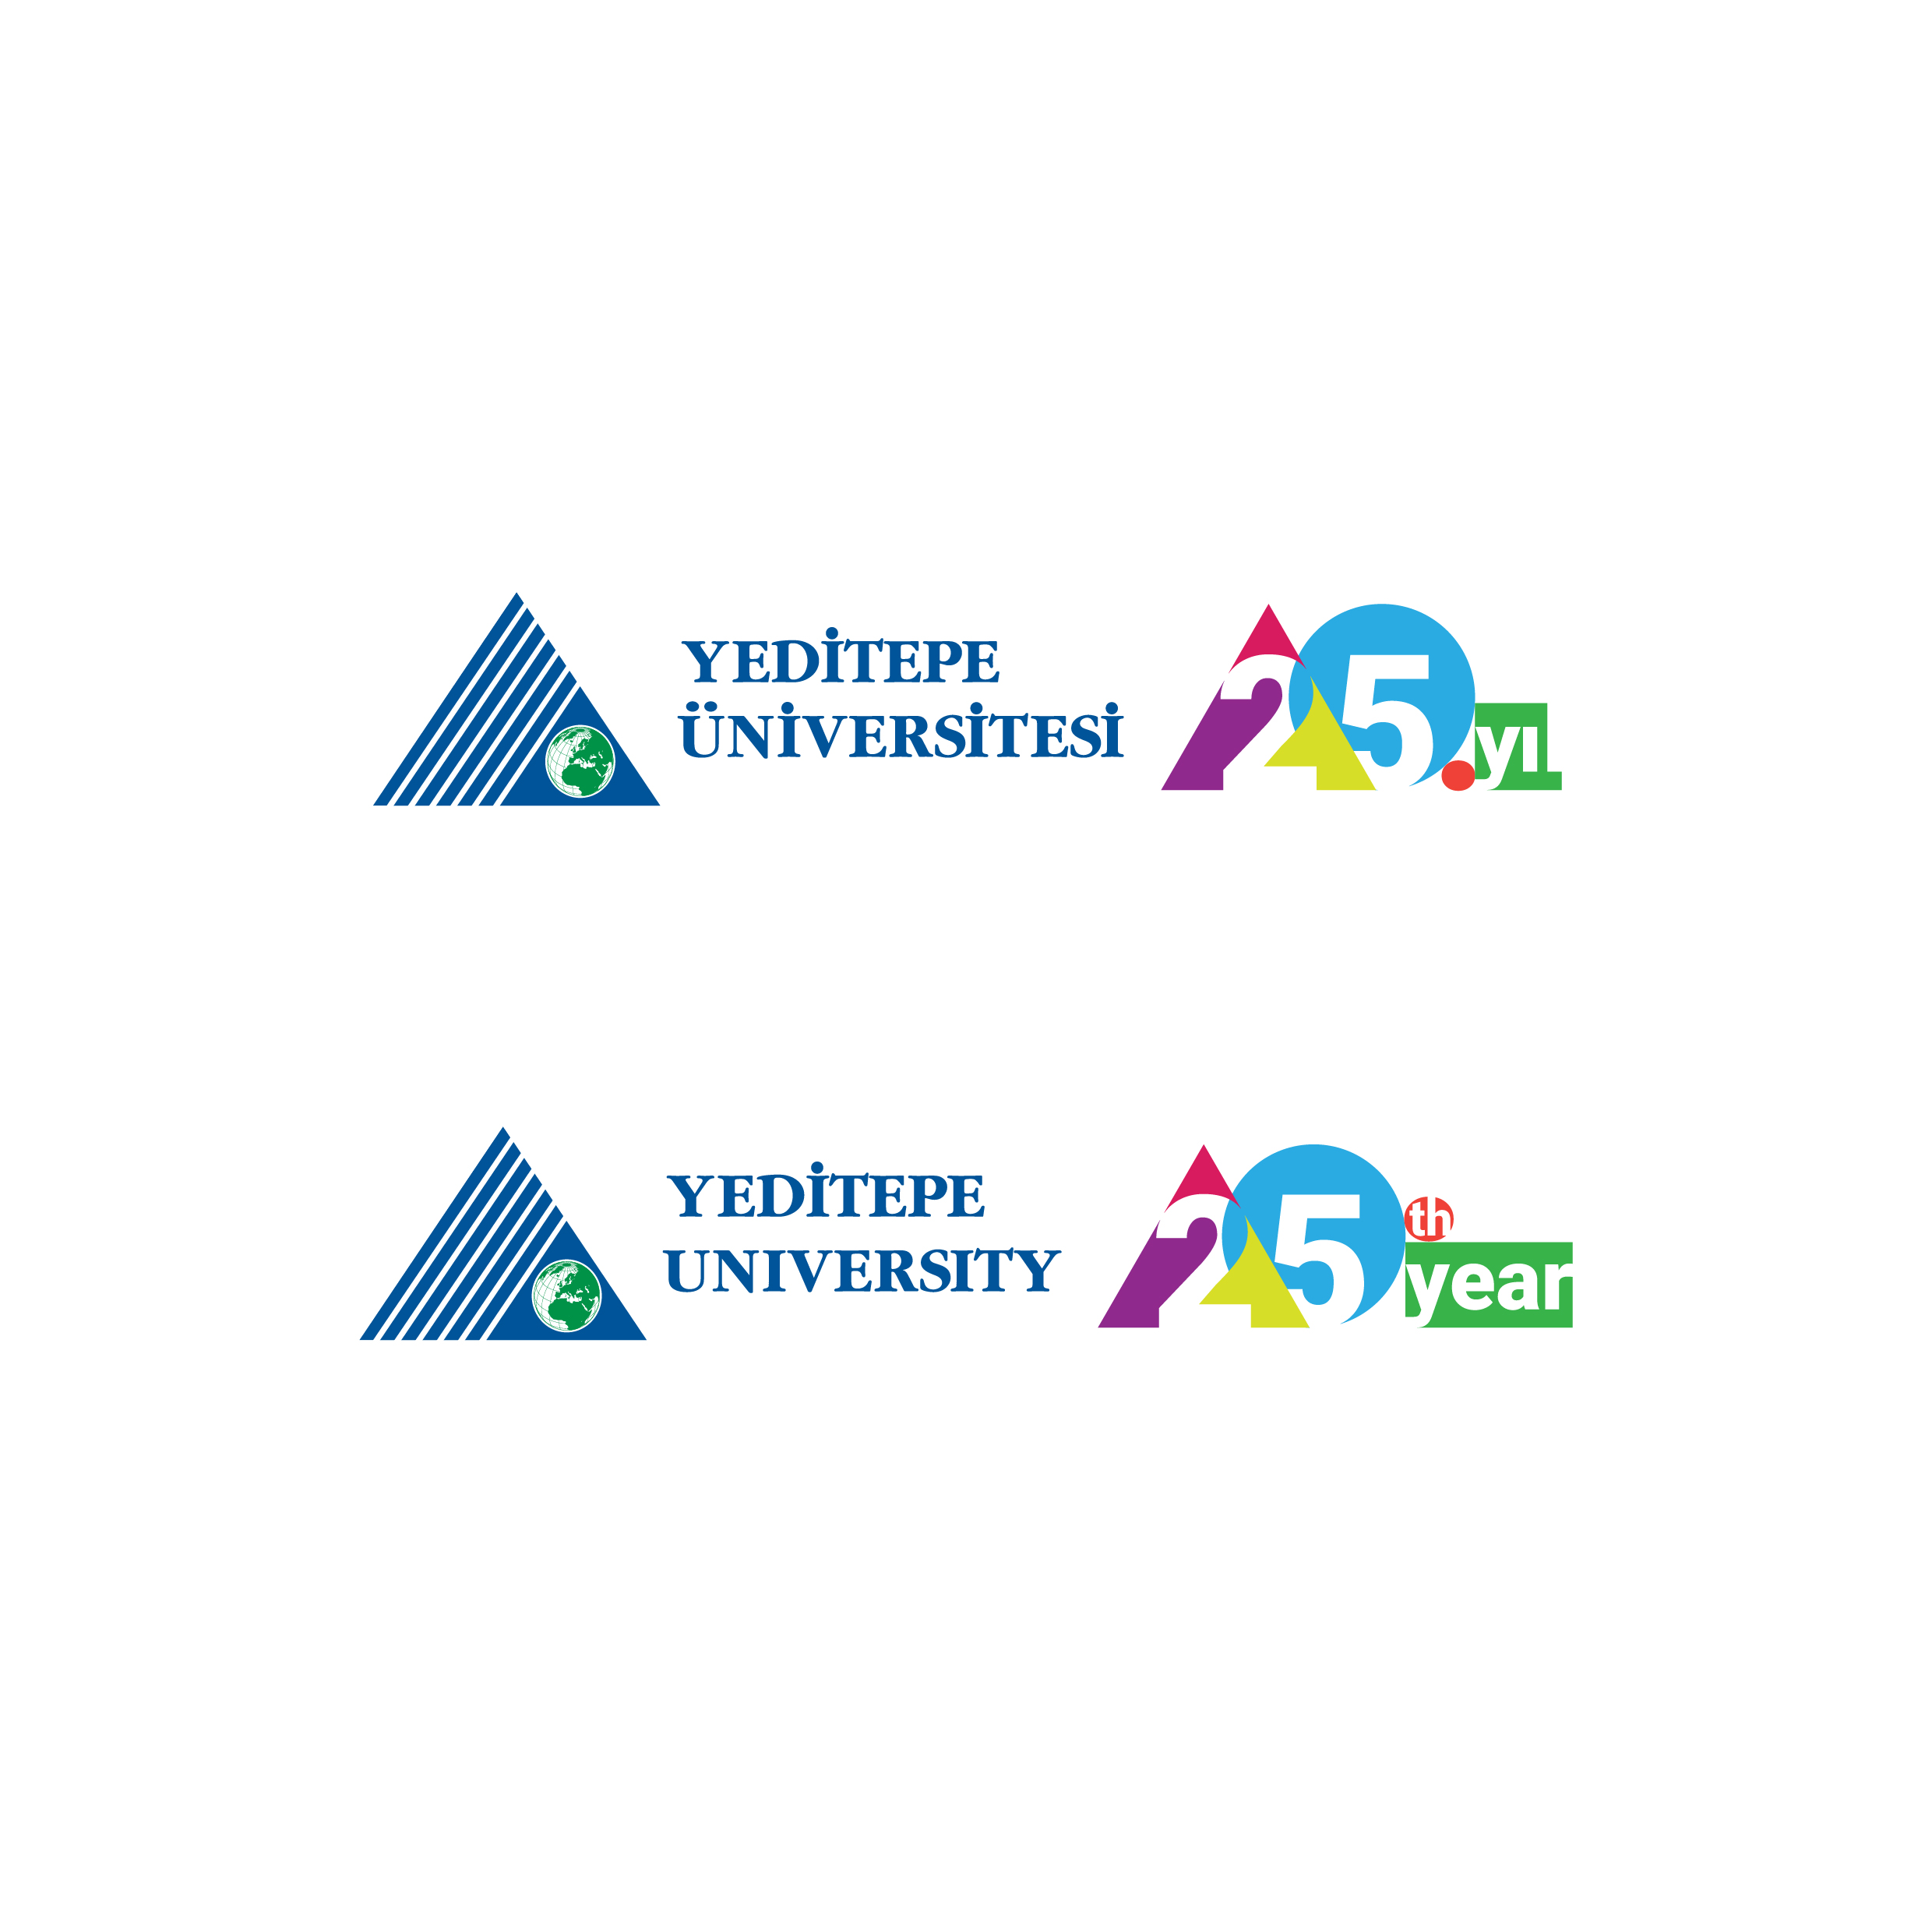 yeditepe_universitesi_25_yil_logo_kullanim-01